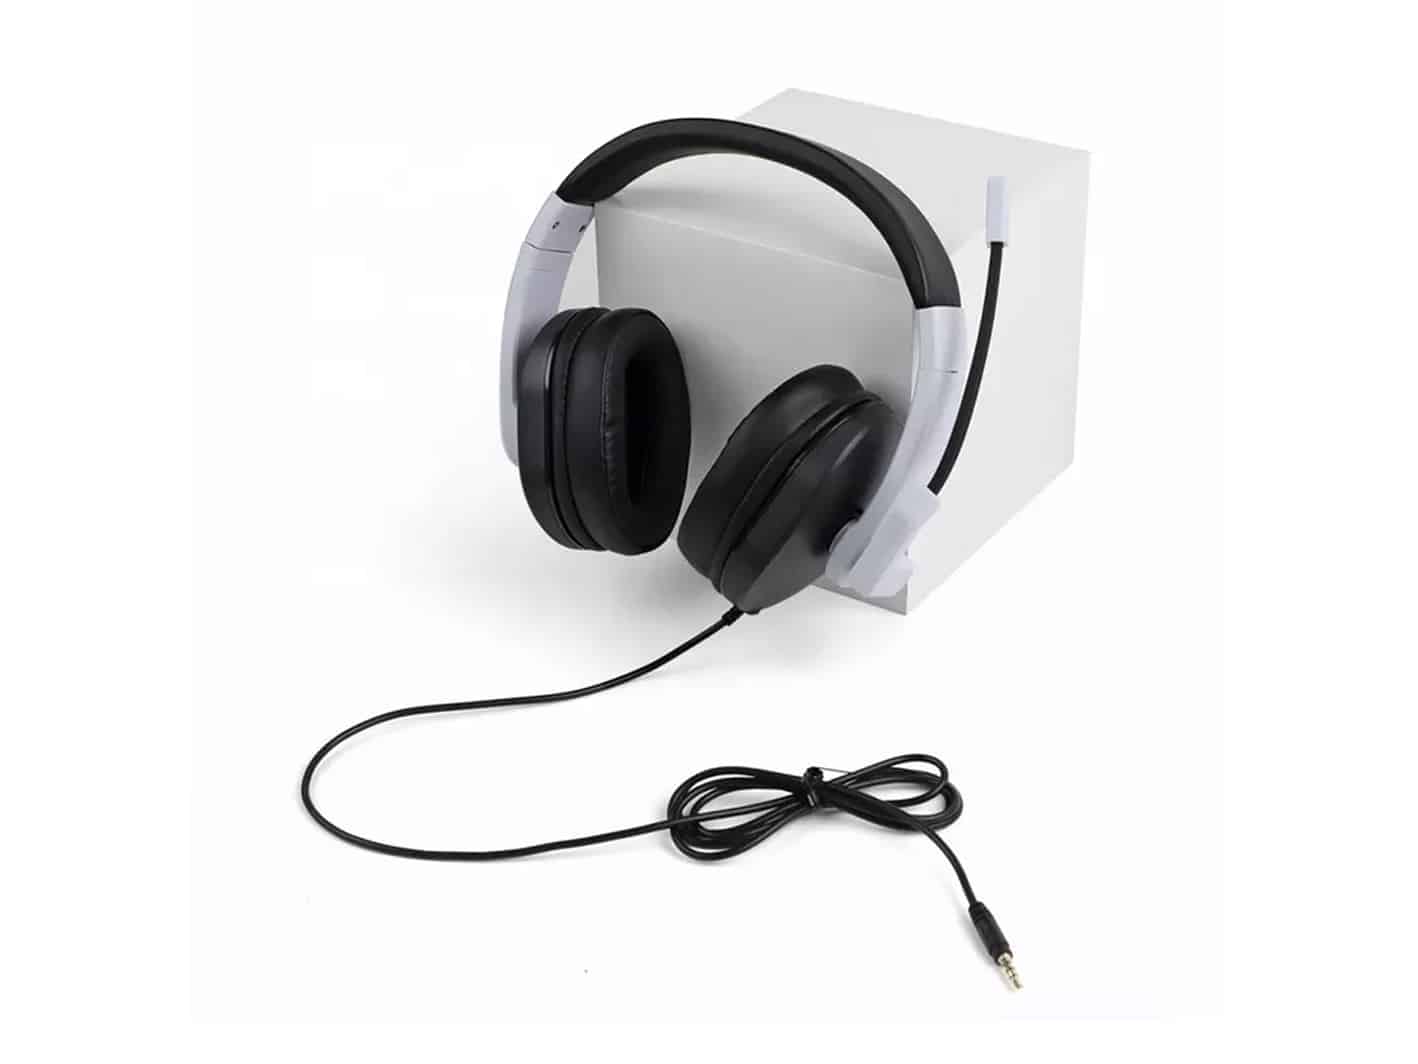 Cuffie con microfono da gioco wireless per PS4, Xbox One e PC